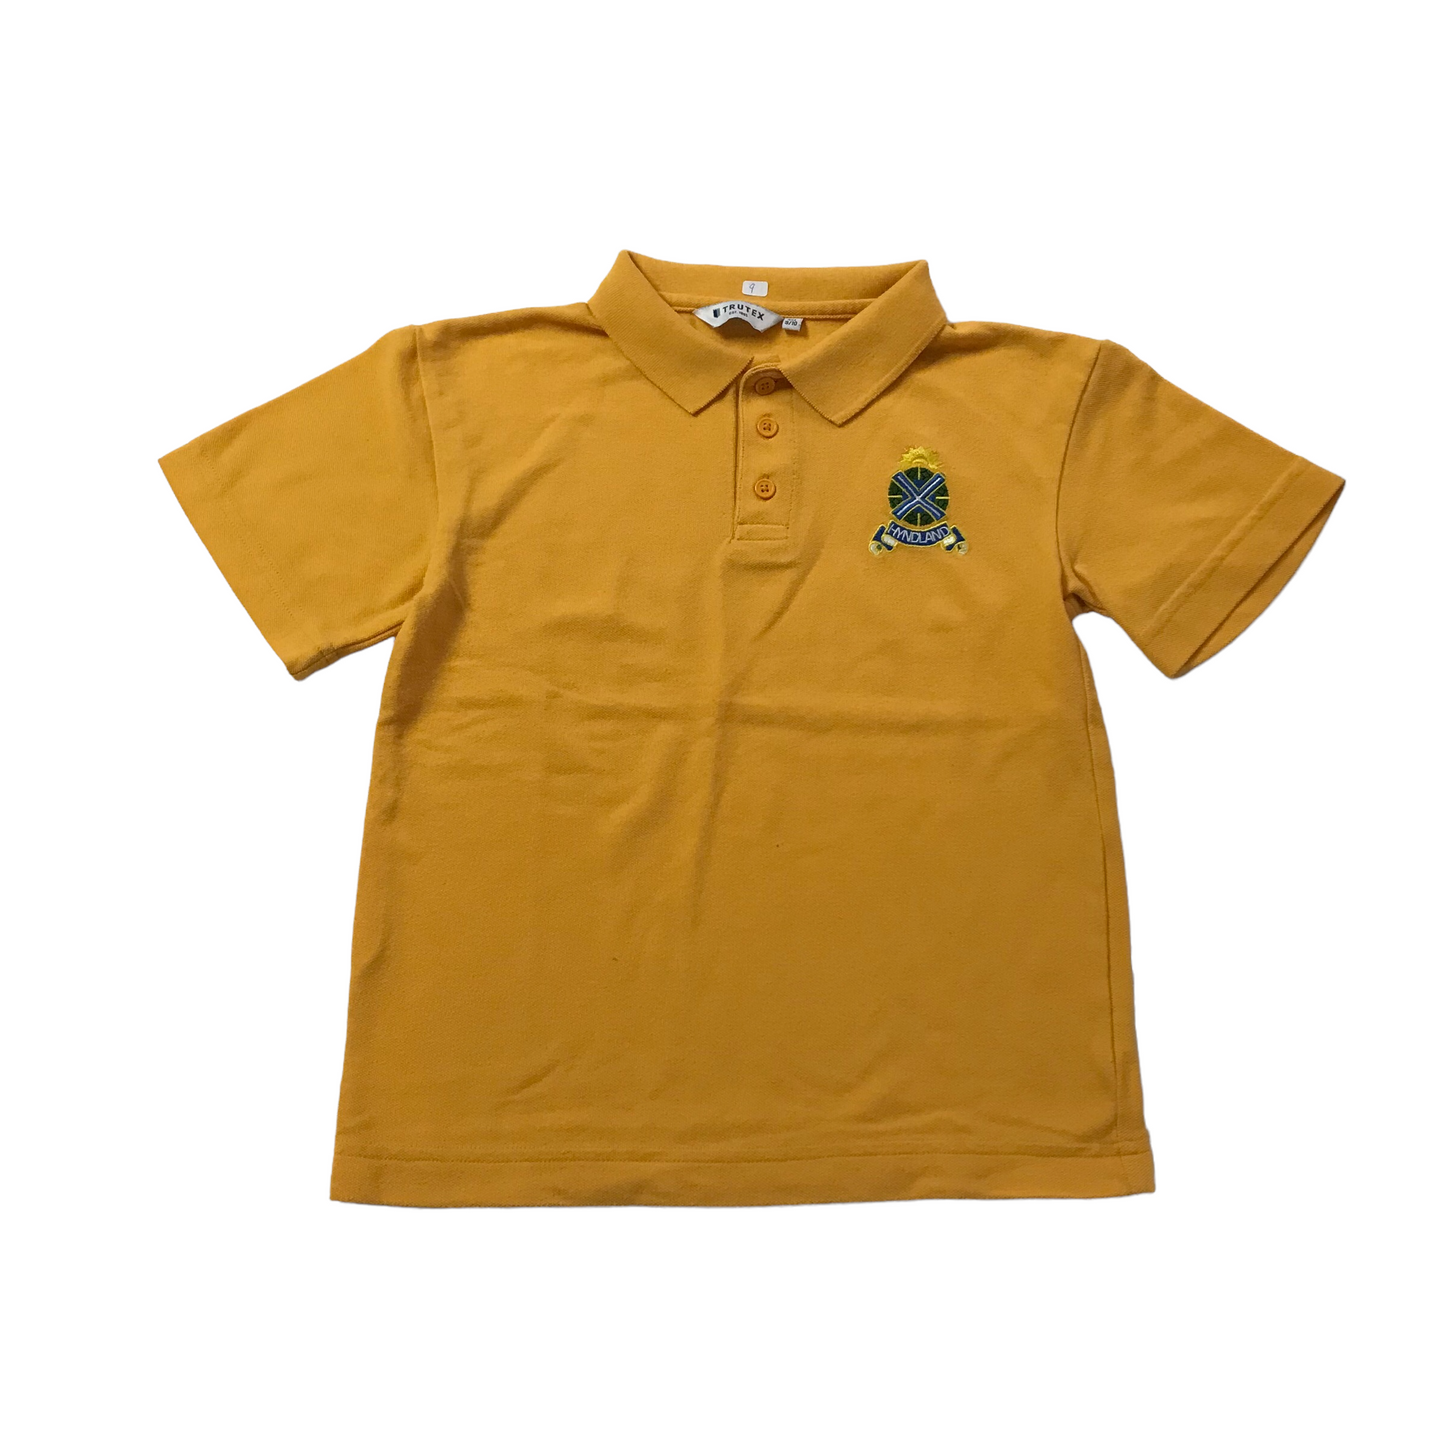 Hyndland Primary Yellow Polo Shirt